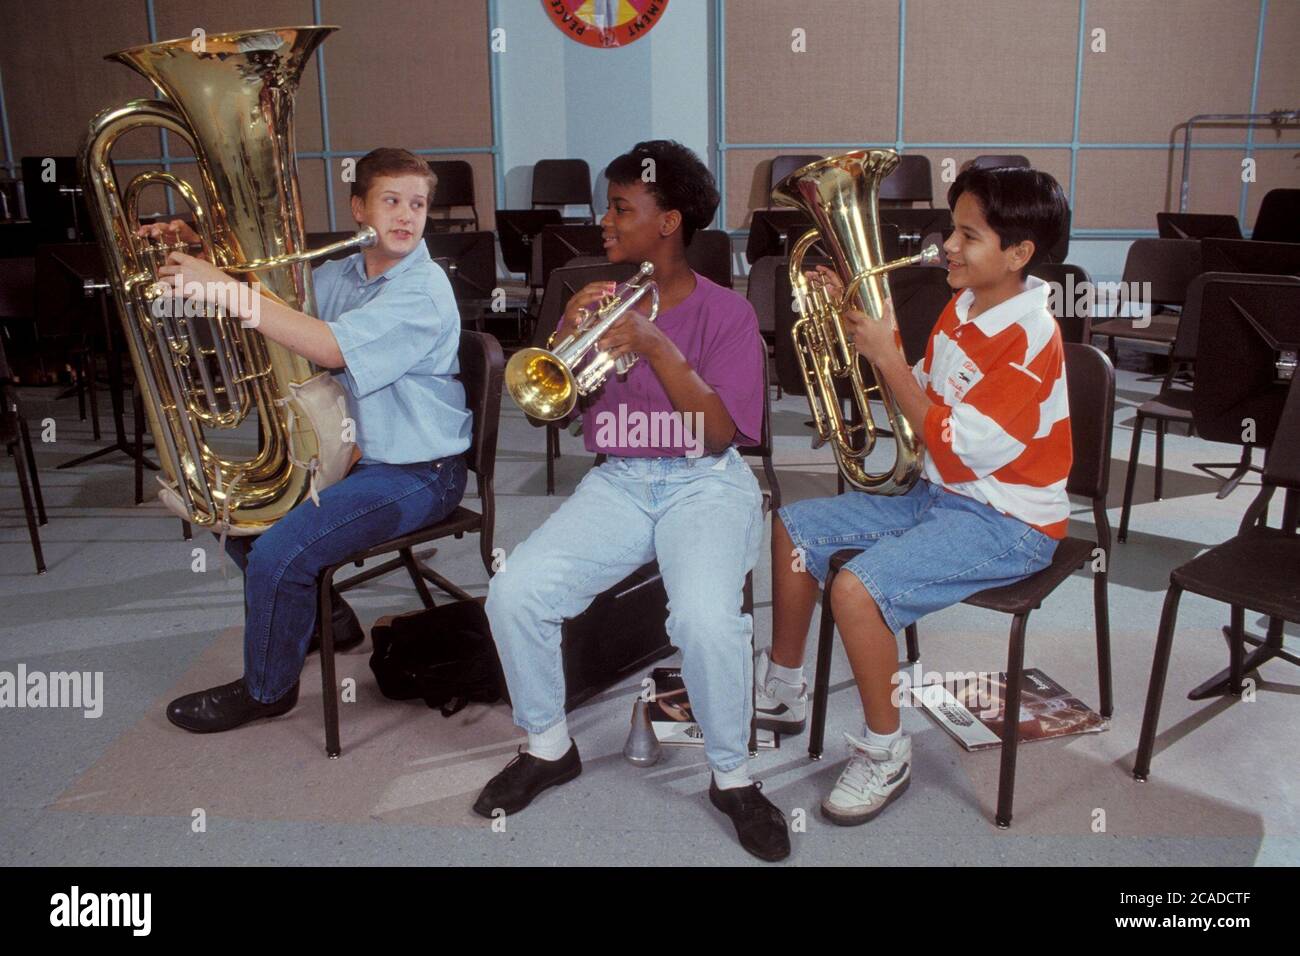 Le garçon anglo joue du tuba, tandis que la fille afro-américaine joue de la trompette et le garçon hispanique joue de l'euphonium pendant la répétition de bande de collège. ©Bob Daemmrich Banque D'Images